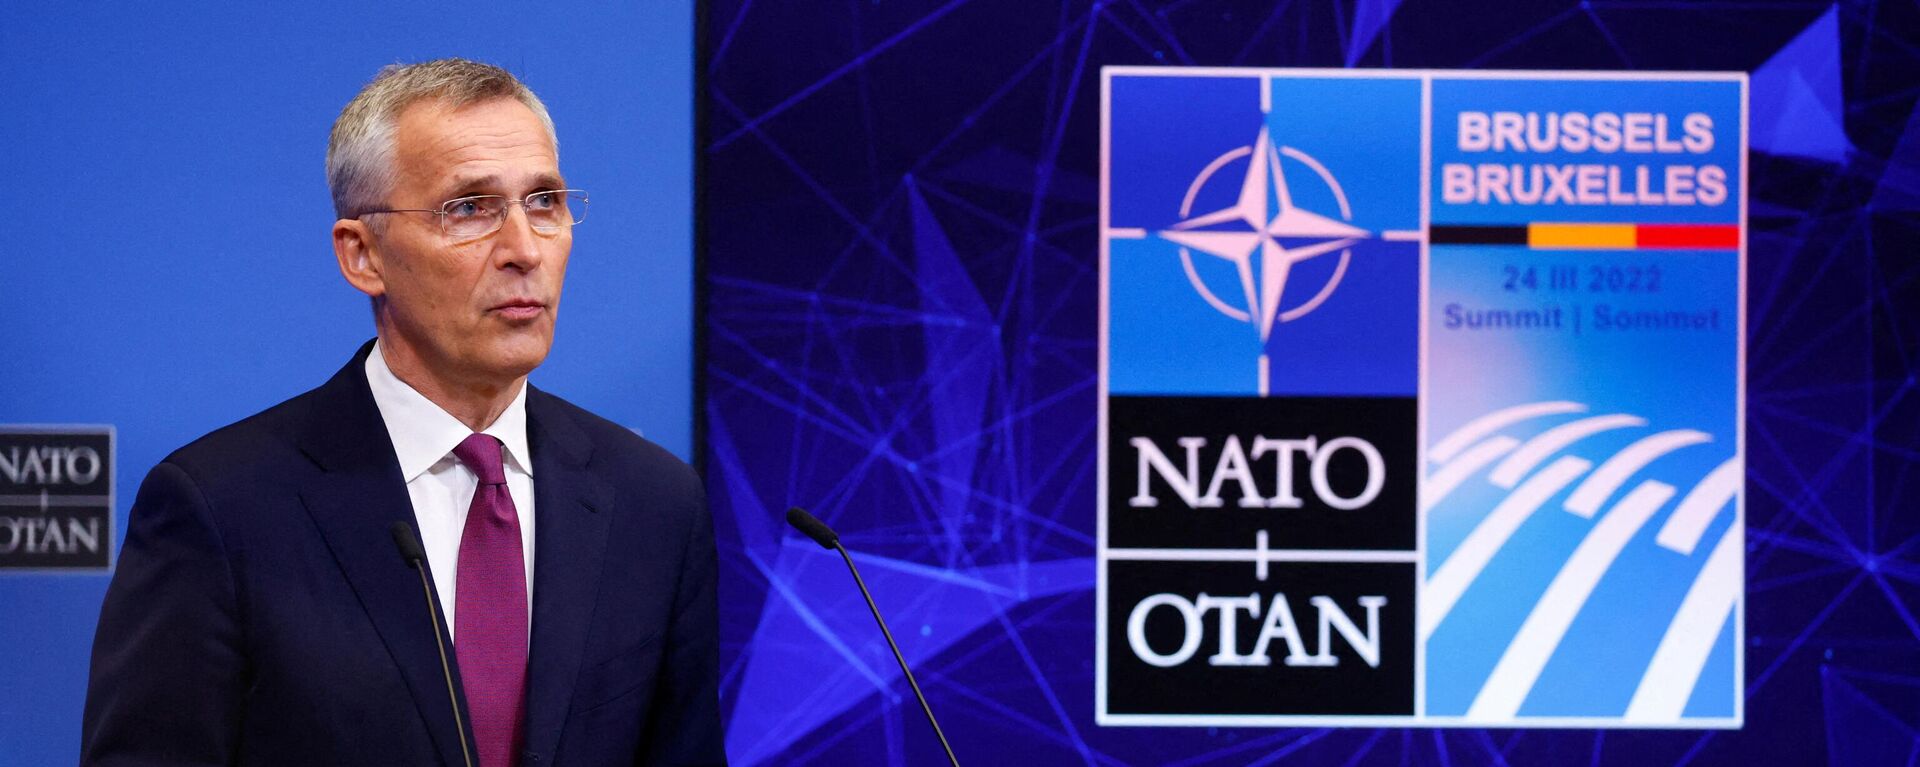 Генеральный секретарь НАТО Йенс Столтенберг выступает на саммите в Брюсселе, 24 марта 2022 года   - Sputnik Латвия, 1920, 03.04.2022